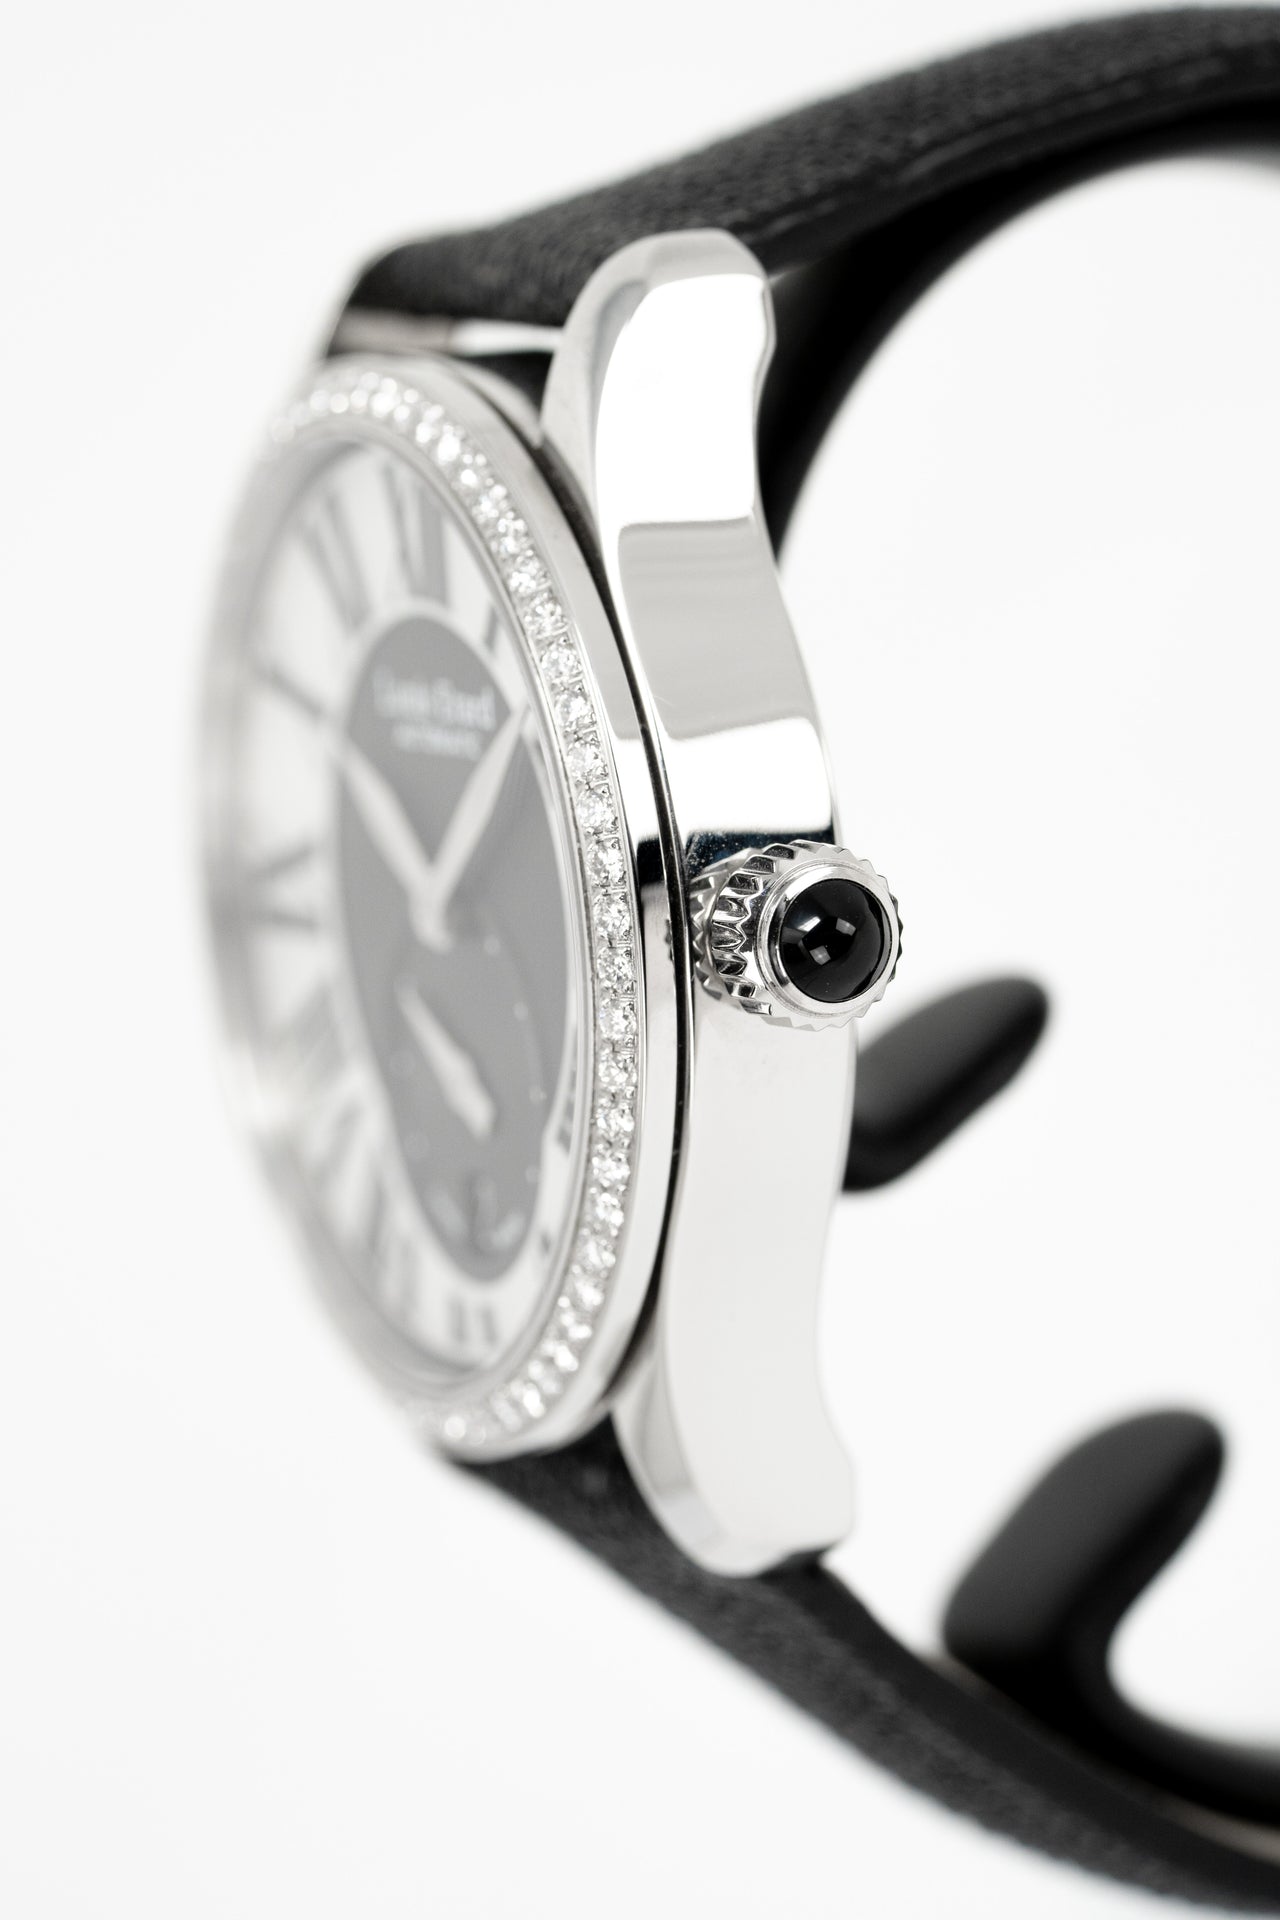 Louis Erard Watch Ladies Automatic Excellence Diamond Black 92602SE02.BDG02